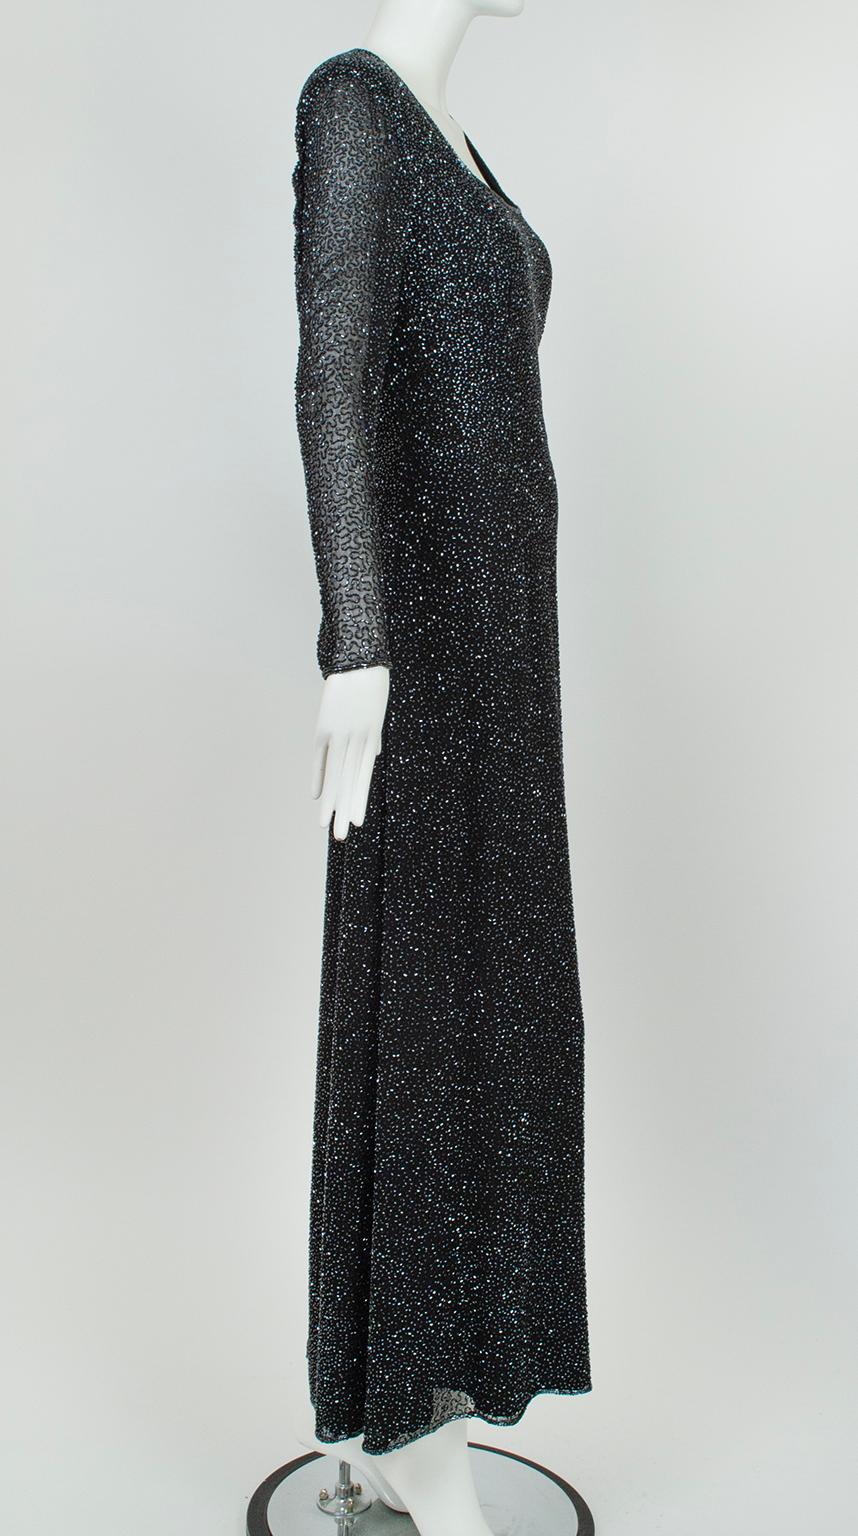 Dieses statuenhafte, bodenlange Kleid in schlichter Silhouette mit schillernden schwarzen Aurora-Borealis-Perlen ist so schlicht, dass die Trägerin - und nicht ihr Kleid - das Wort ergreift. Ein Hammer aus Samt für den Auftritt bei Ihrer nächsten